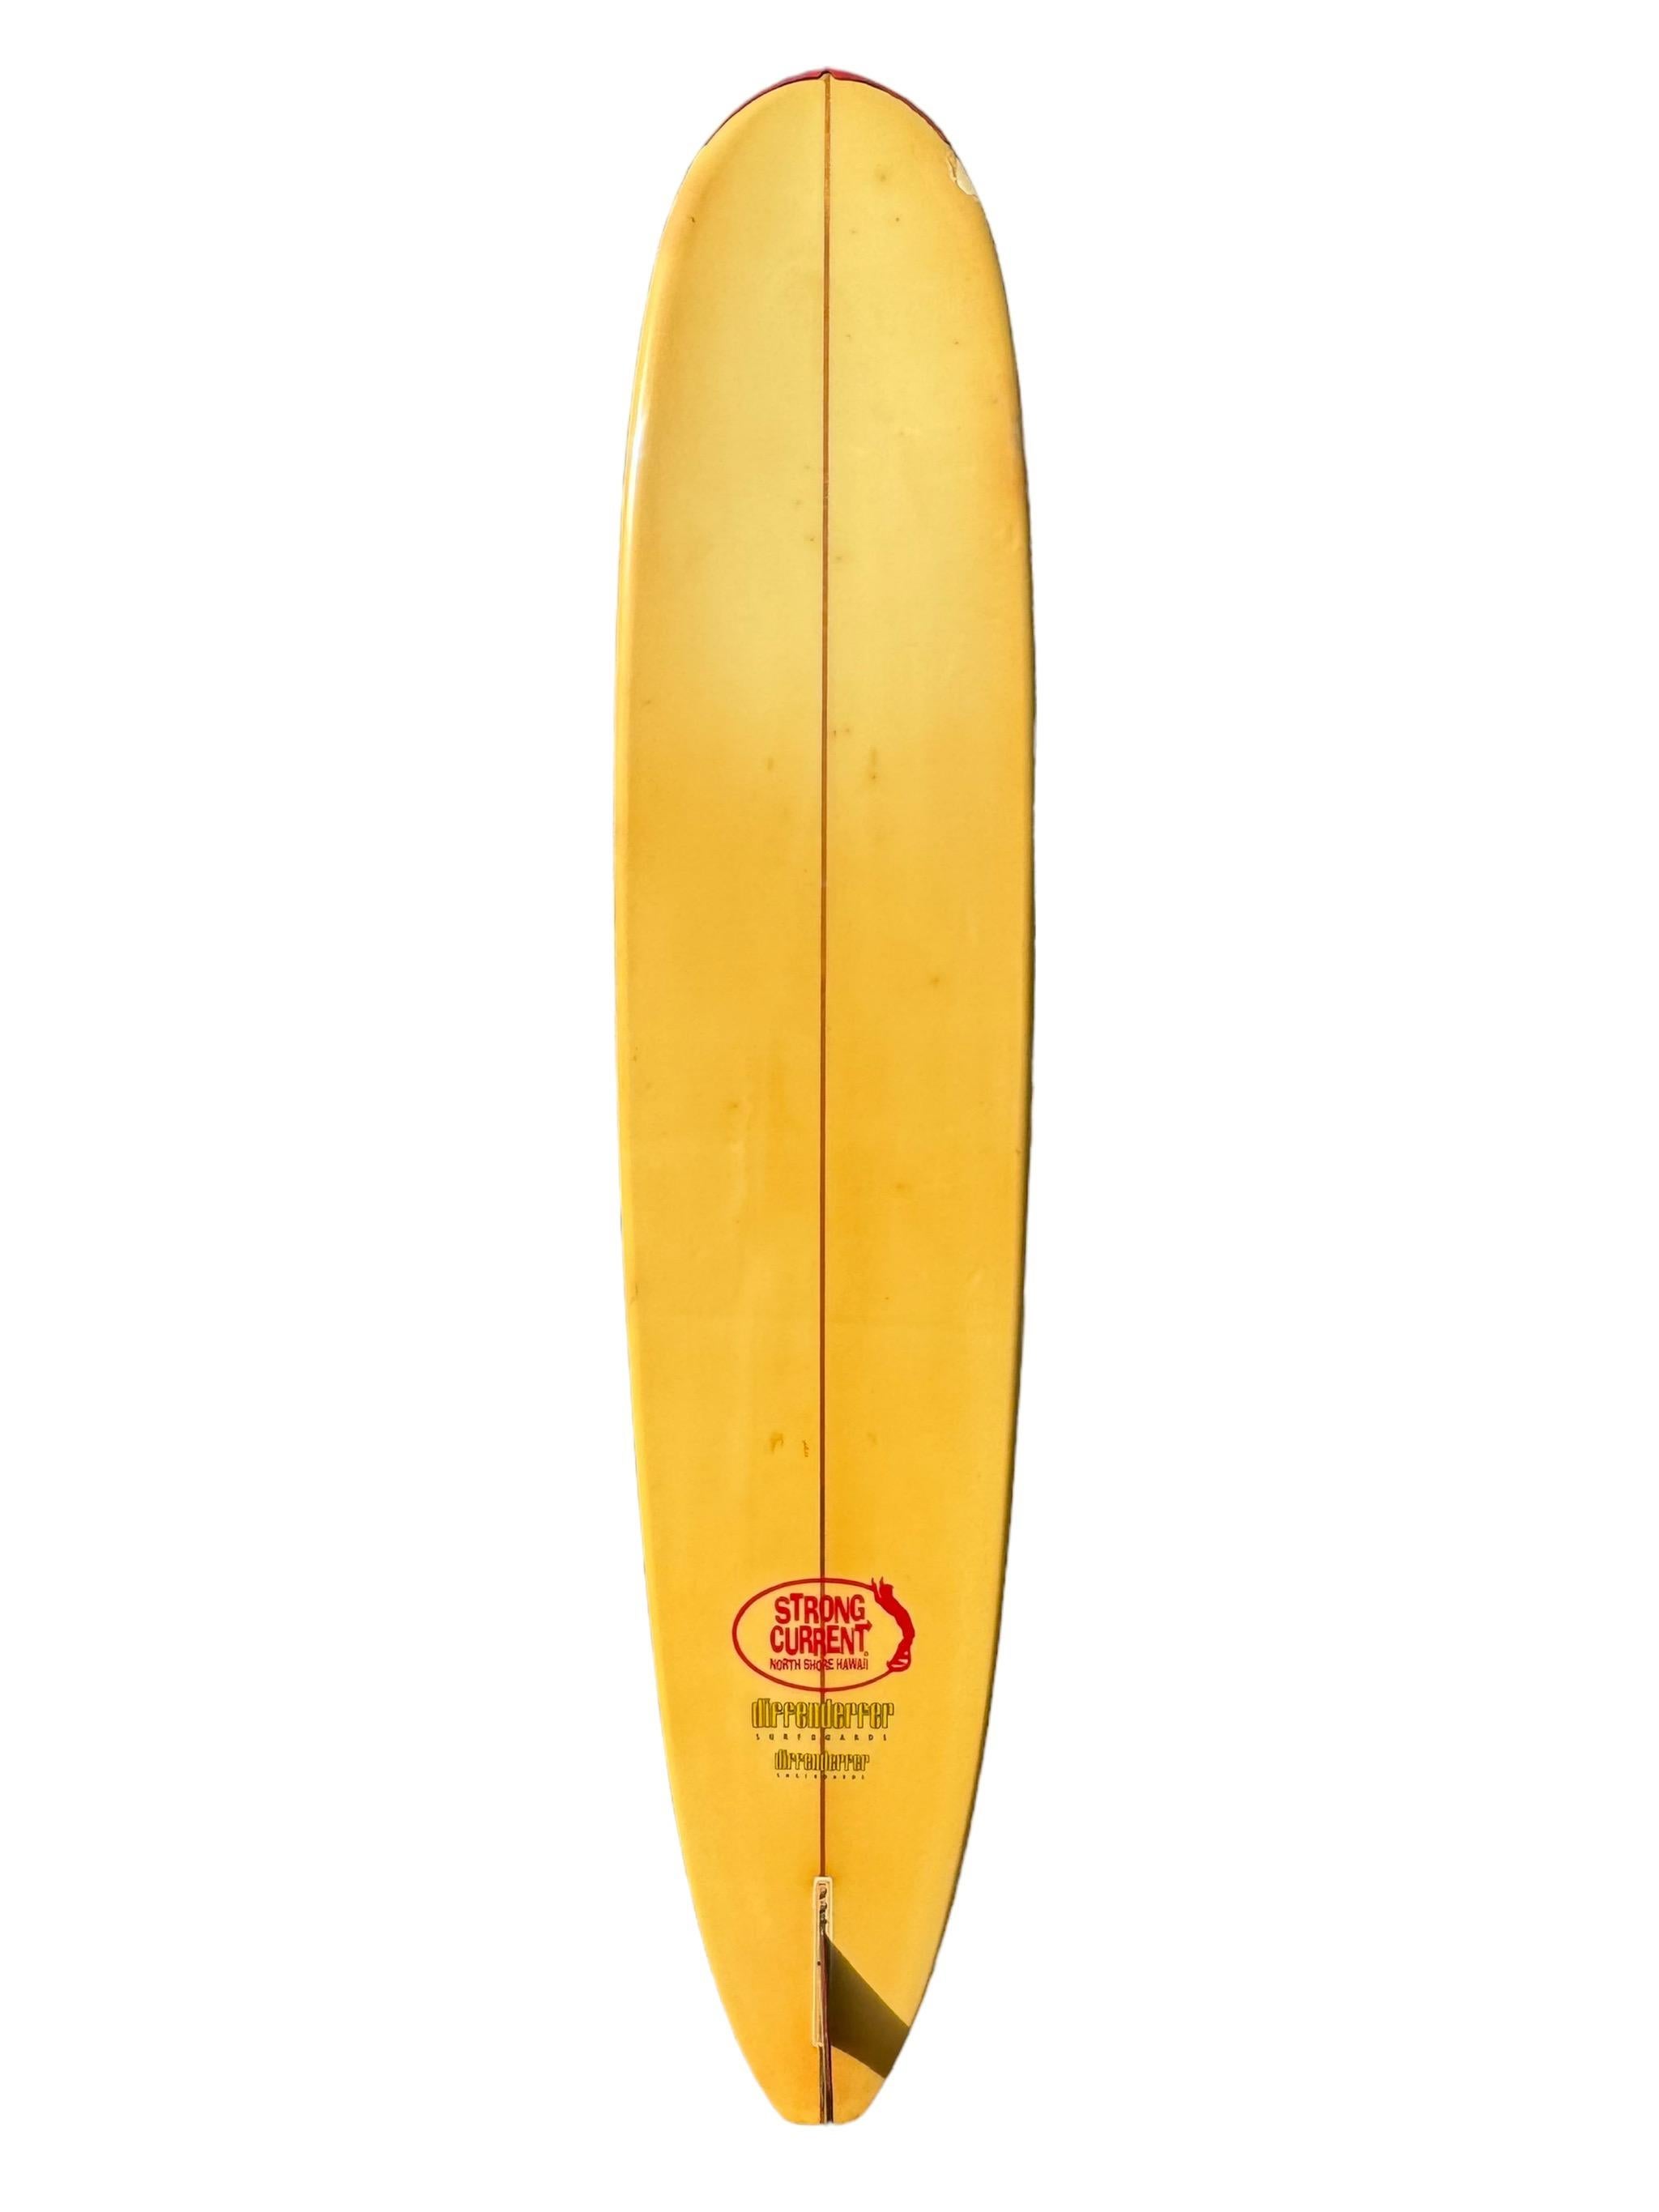 1995 Vintage Diffenderfer Strong Current Longboard geshaped von dem verstorbenen Mike Diffenderfer (1937-2002). Bietet schöne florale Kunstwerk. Hand signiert auf Redwood Stringer von der Surfboard-Design-Pionier, Mike Diffenderfer. Ein